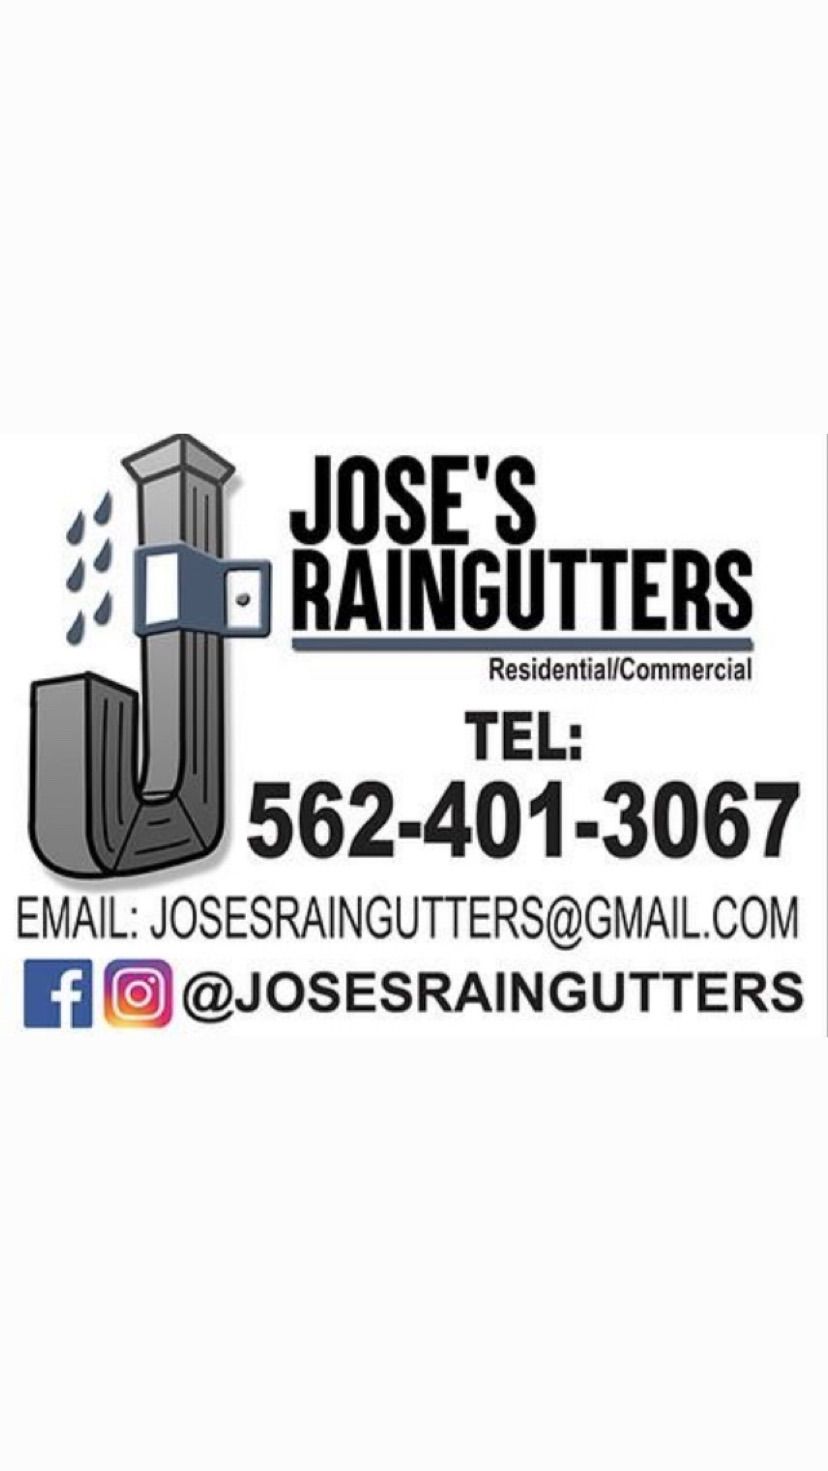 Josesraingutters.Inc